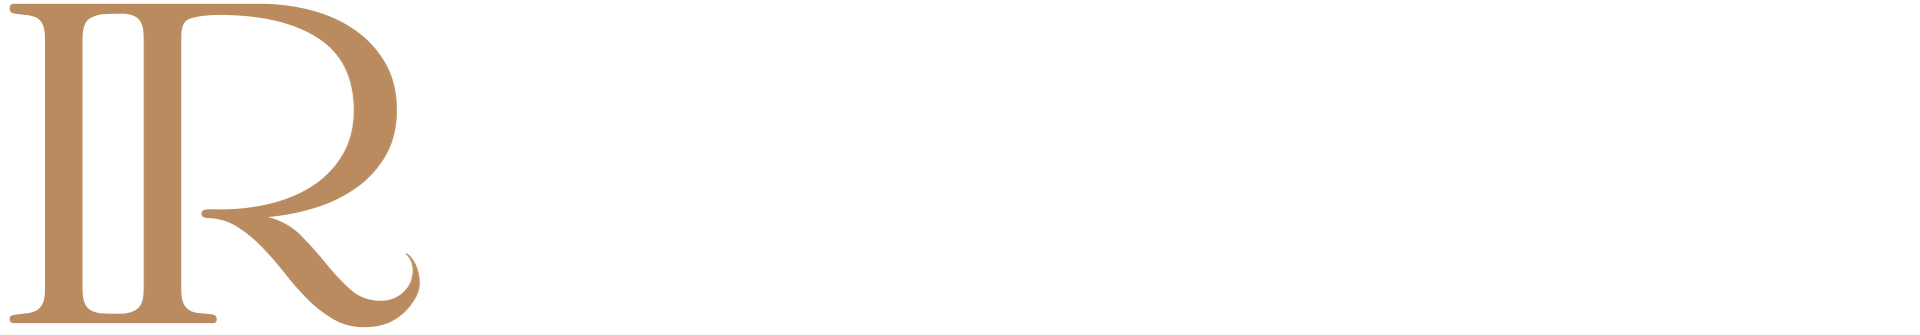 Iwona Rzucidło - Radca Prawny | Warszawa